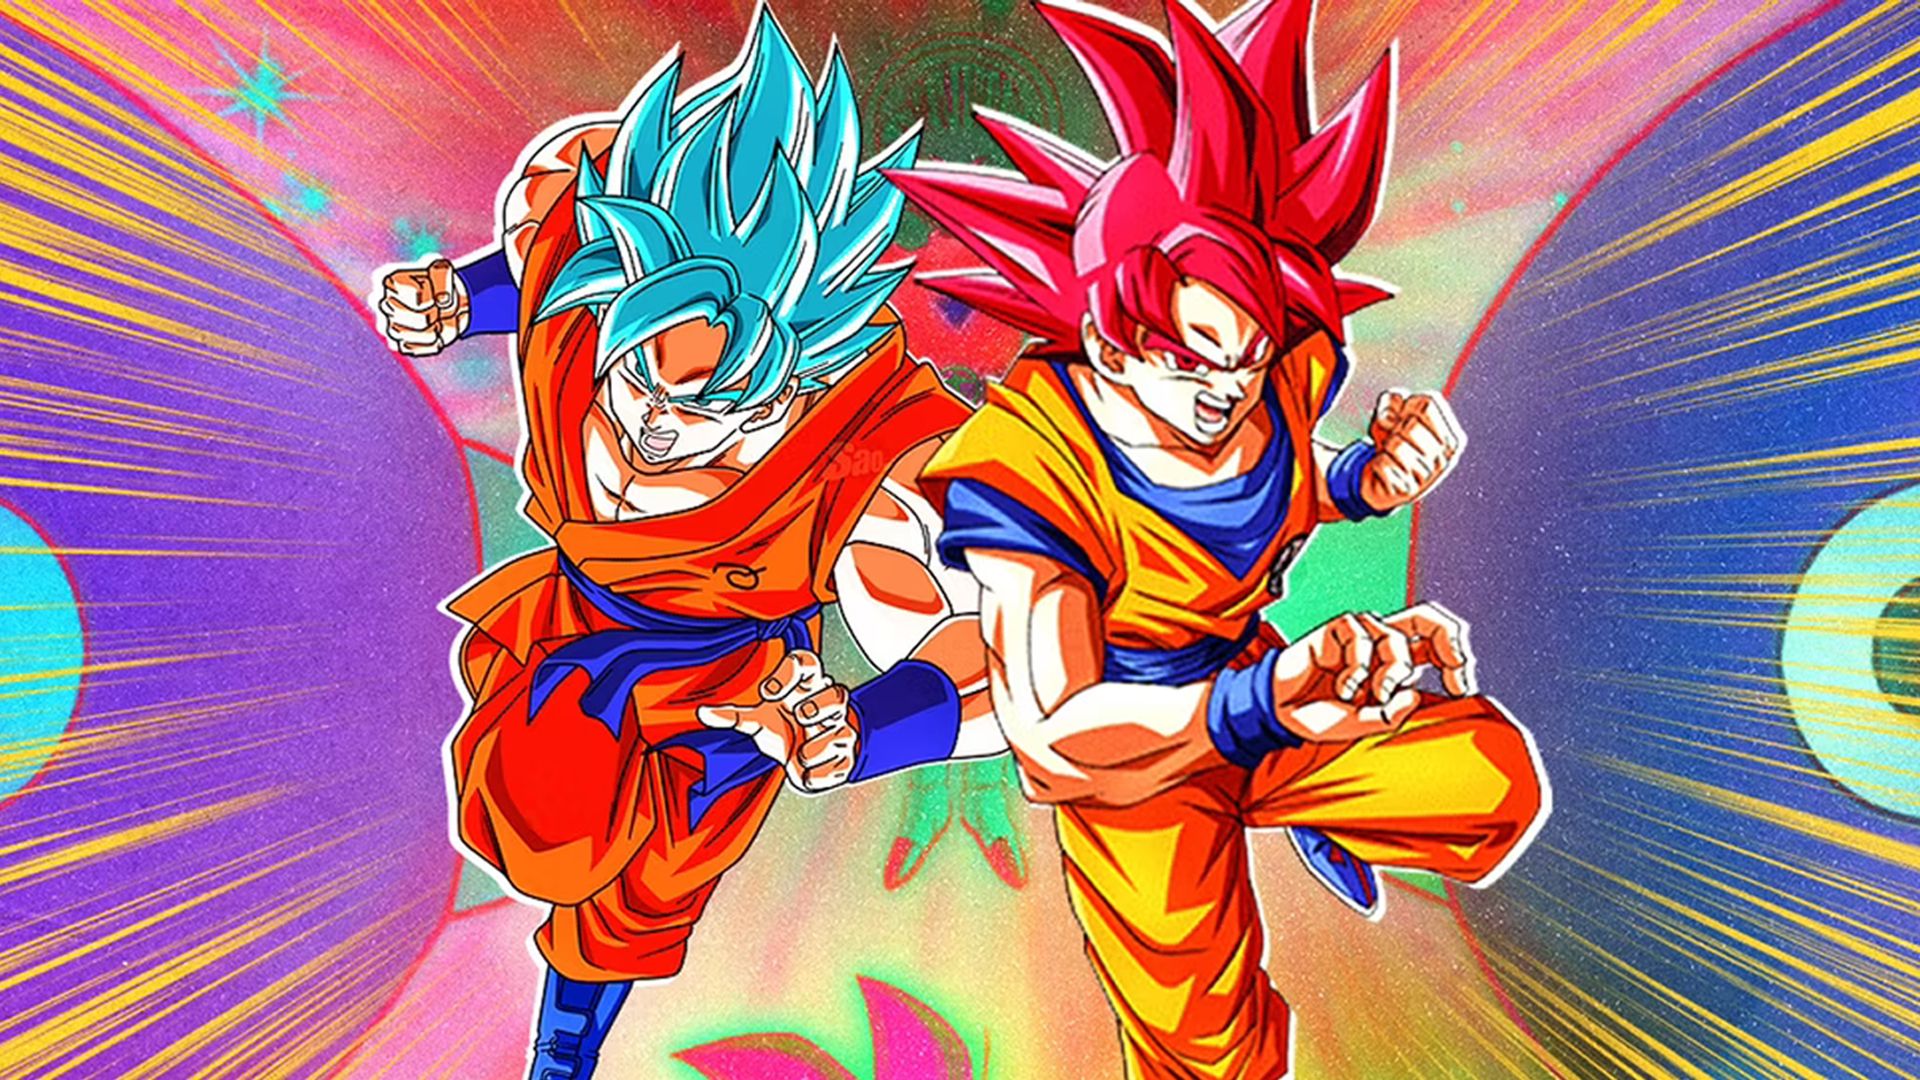 Goku ssj blue - Goku ssj blue added a new photo.